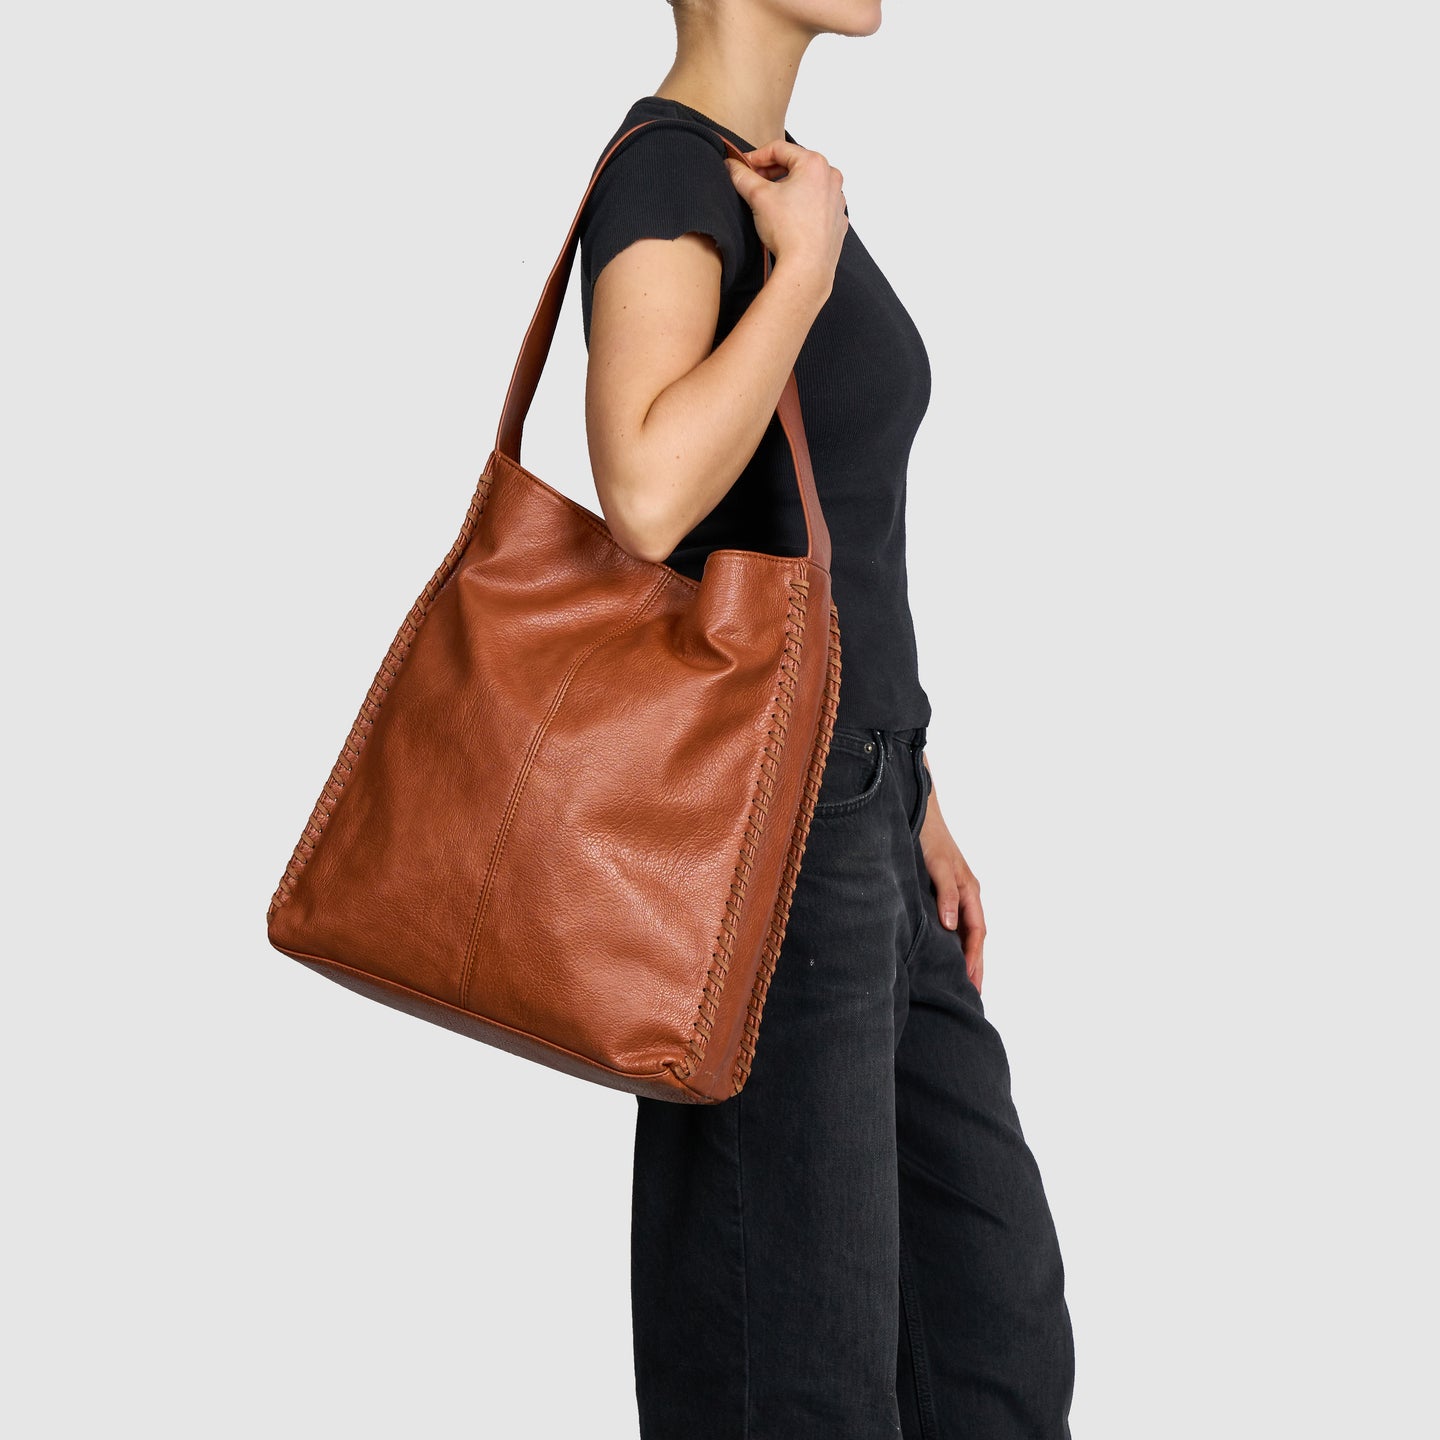 Supreme Shoulder Bag: The Essence of Urban Euphoria